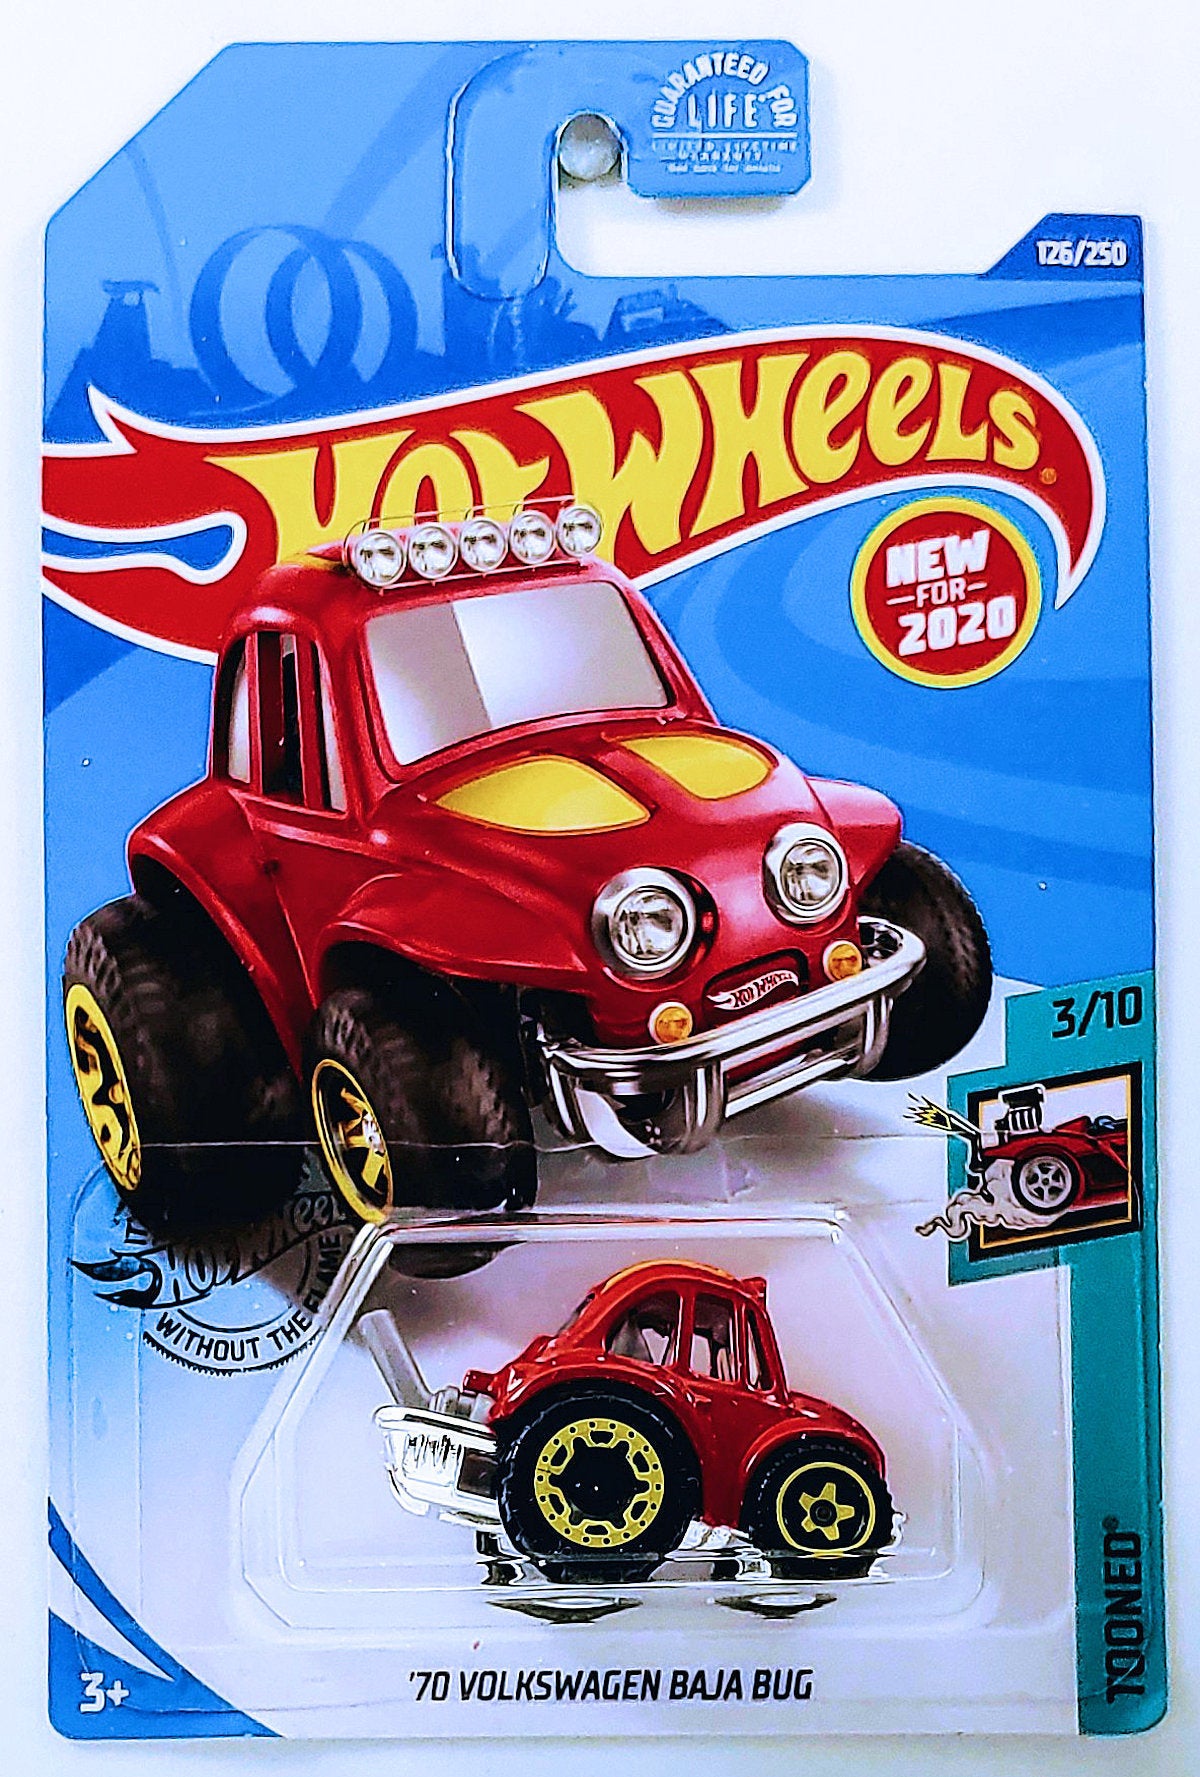 Hot Wheels 2020 - Collector # 126/250 - Tooned 3/10 - New Models - '70 Volkswagen Baja Bug - Red